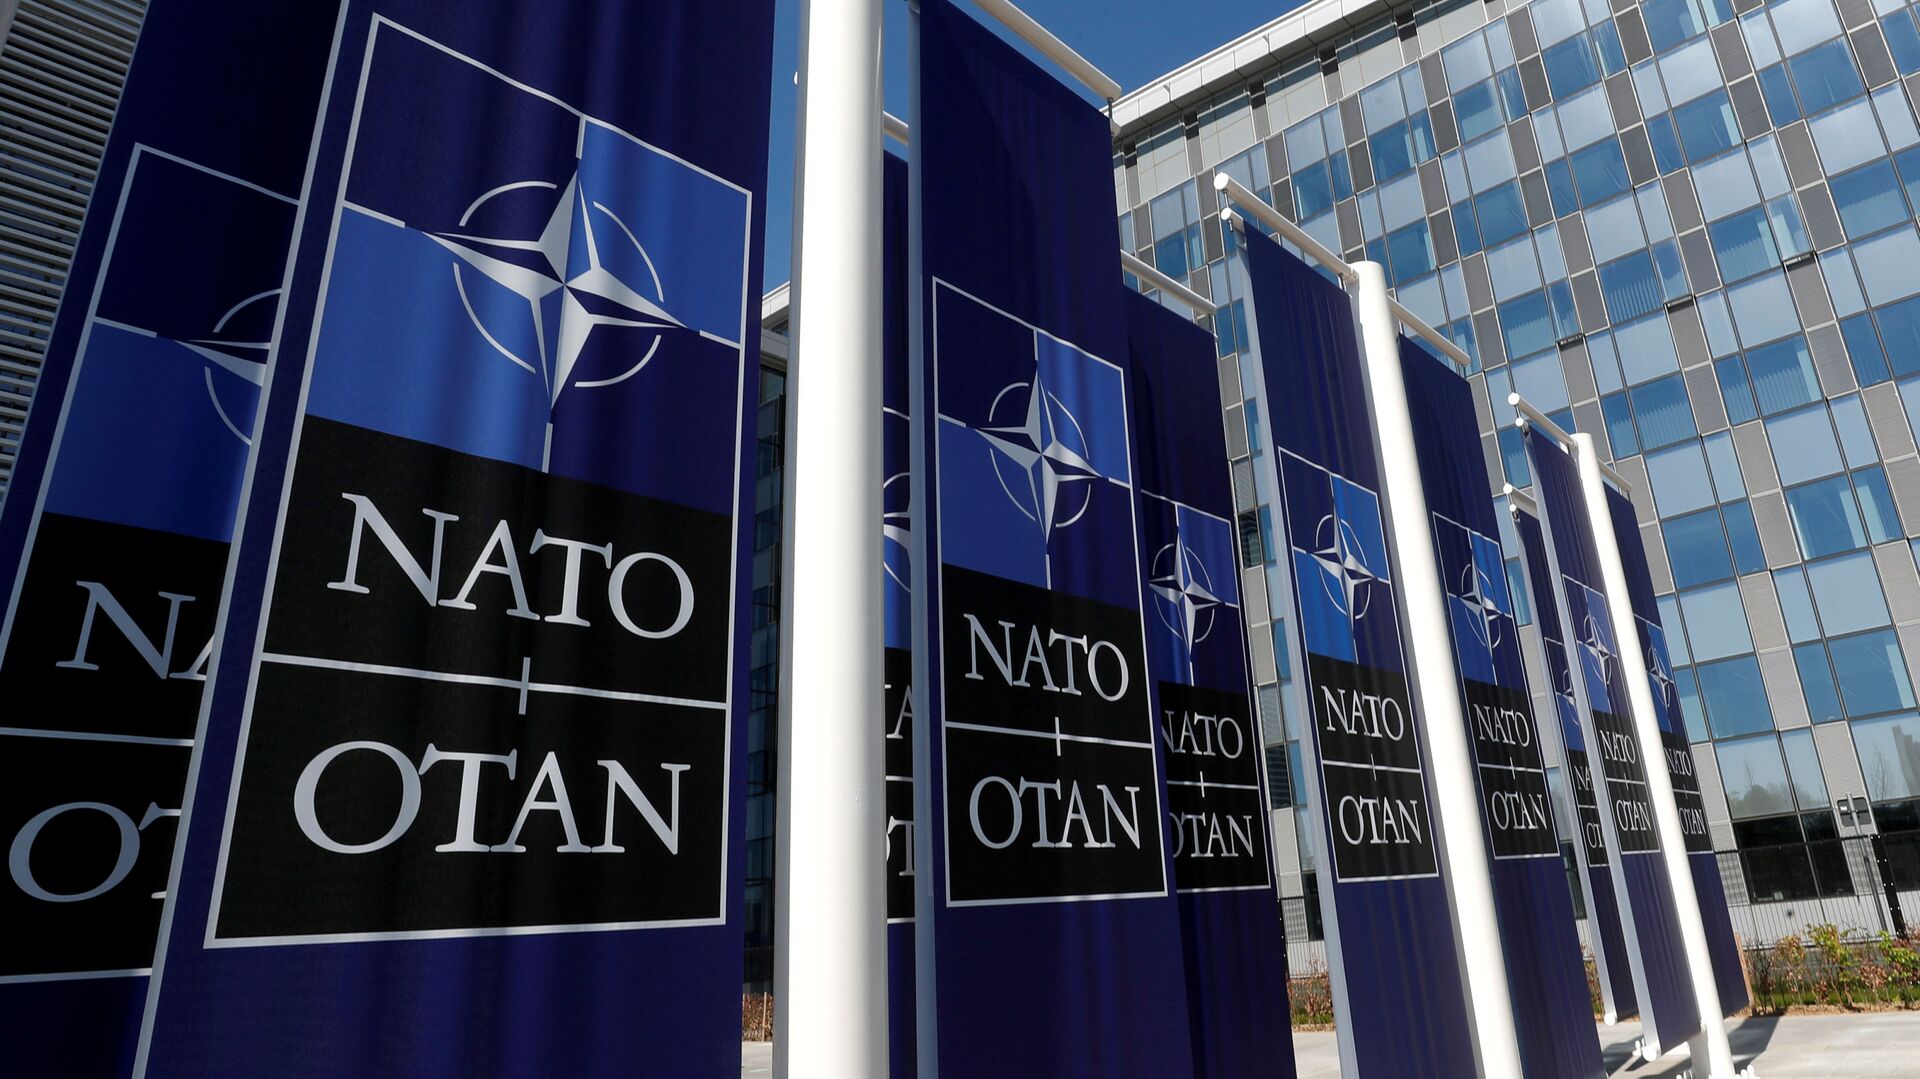 Баннеры с логотипом НАТО у входа в новую штаб-квартиру НАТО - Sputnik Беларусь, 1920, 29.11.2021